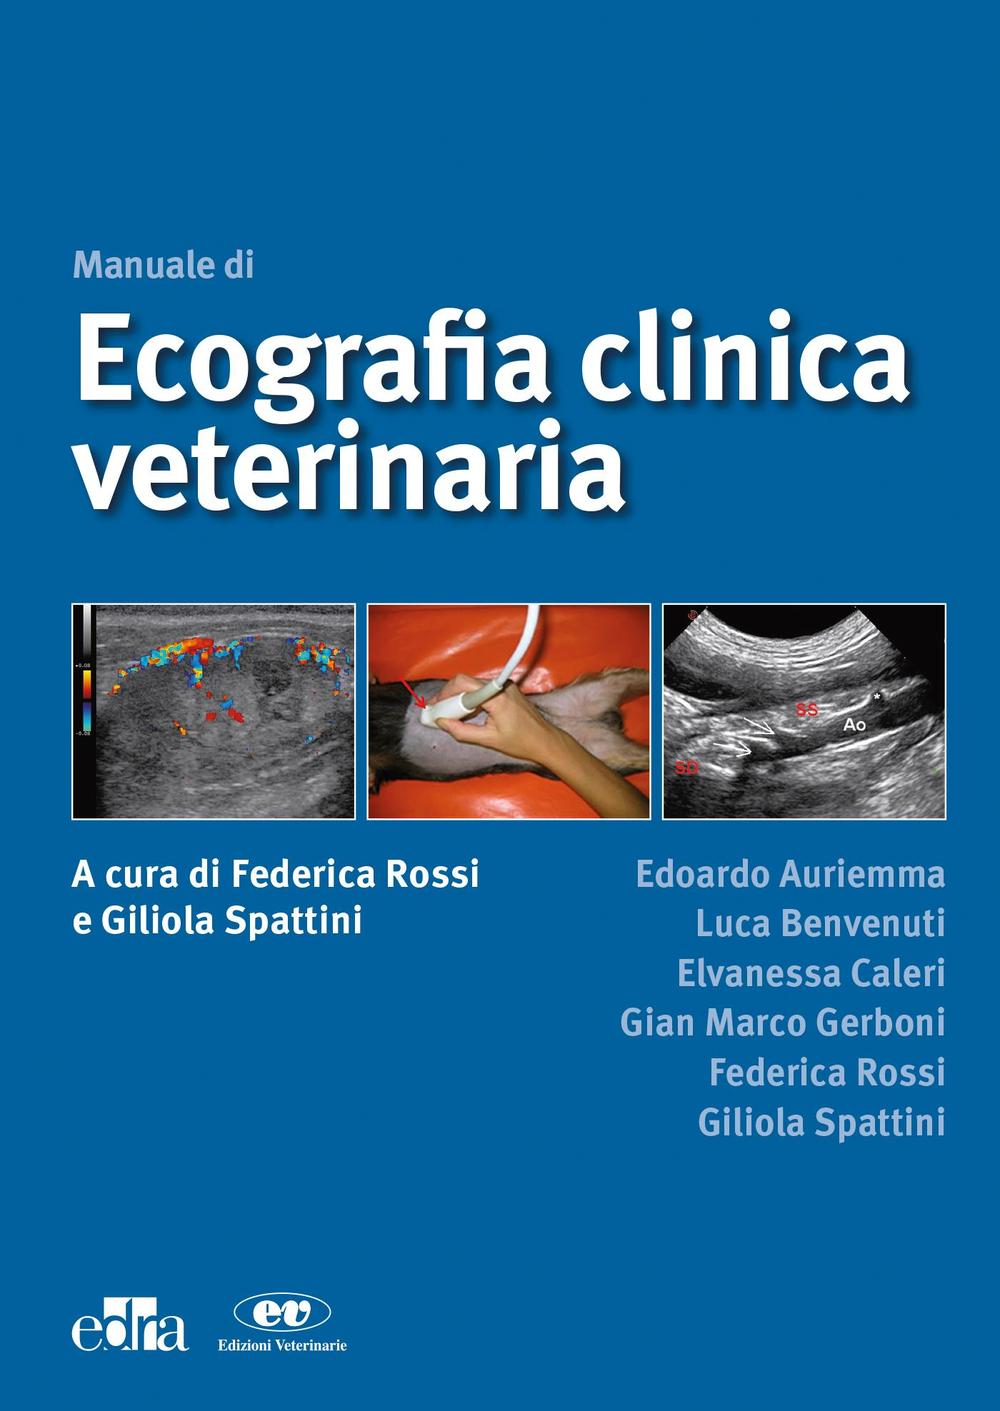 Image of Manuale di ecografia clinica veterinaria